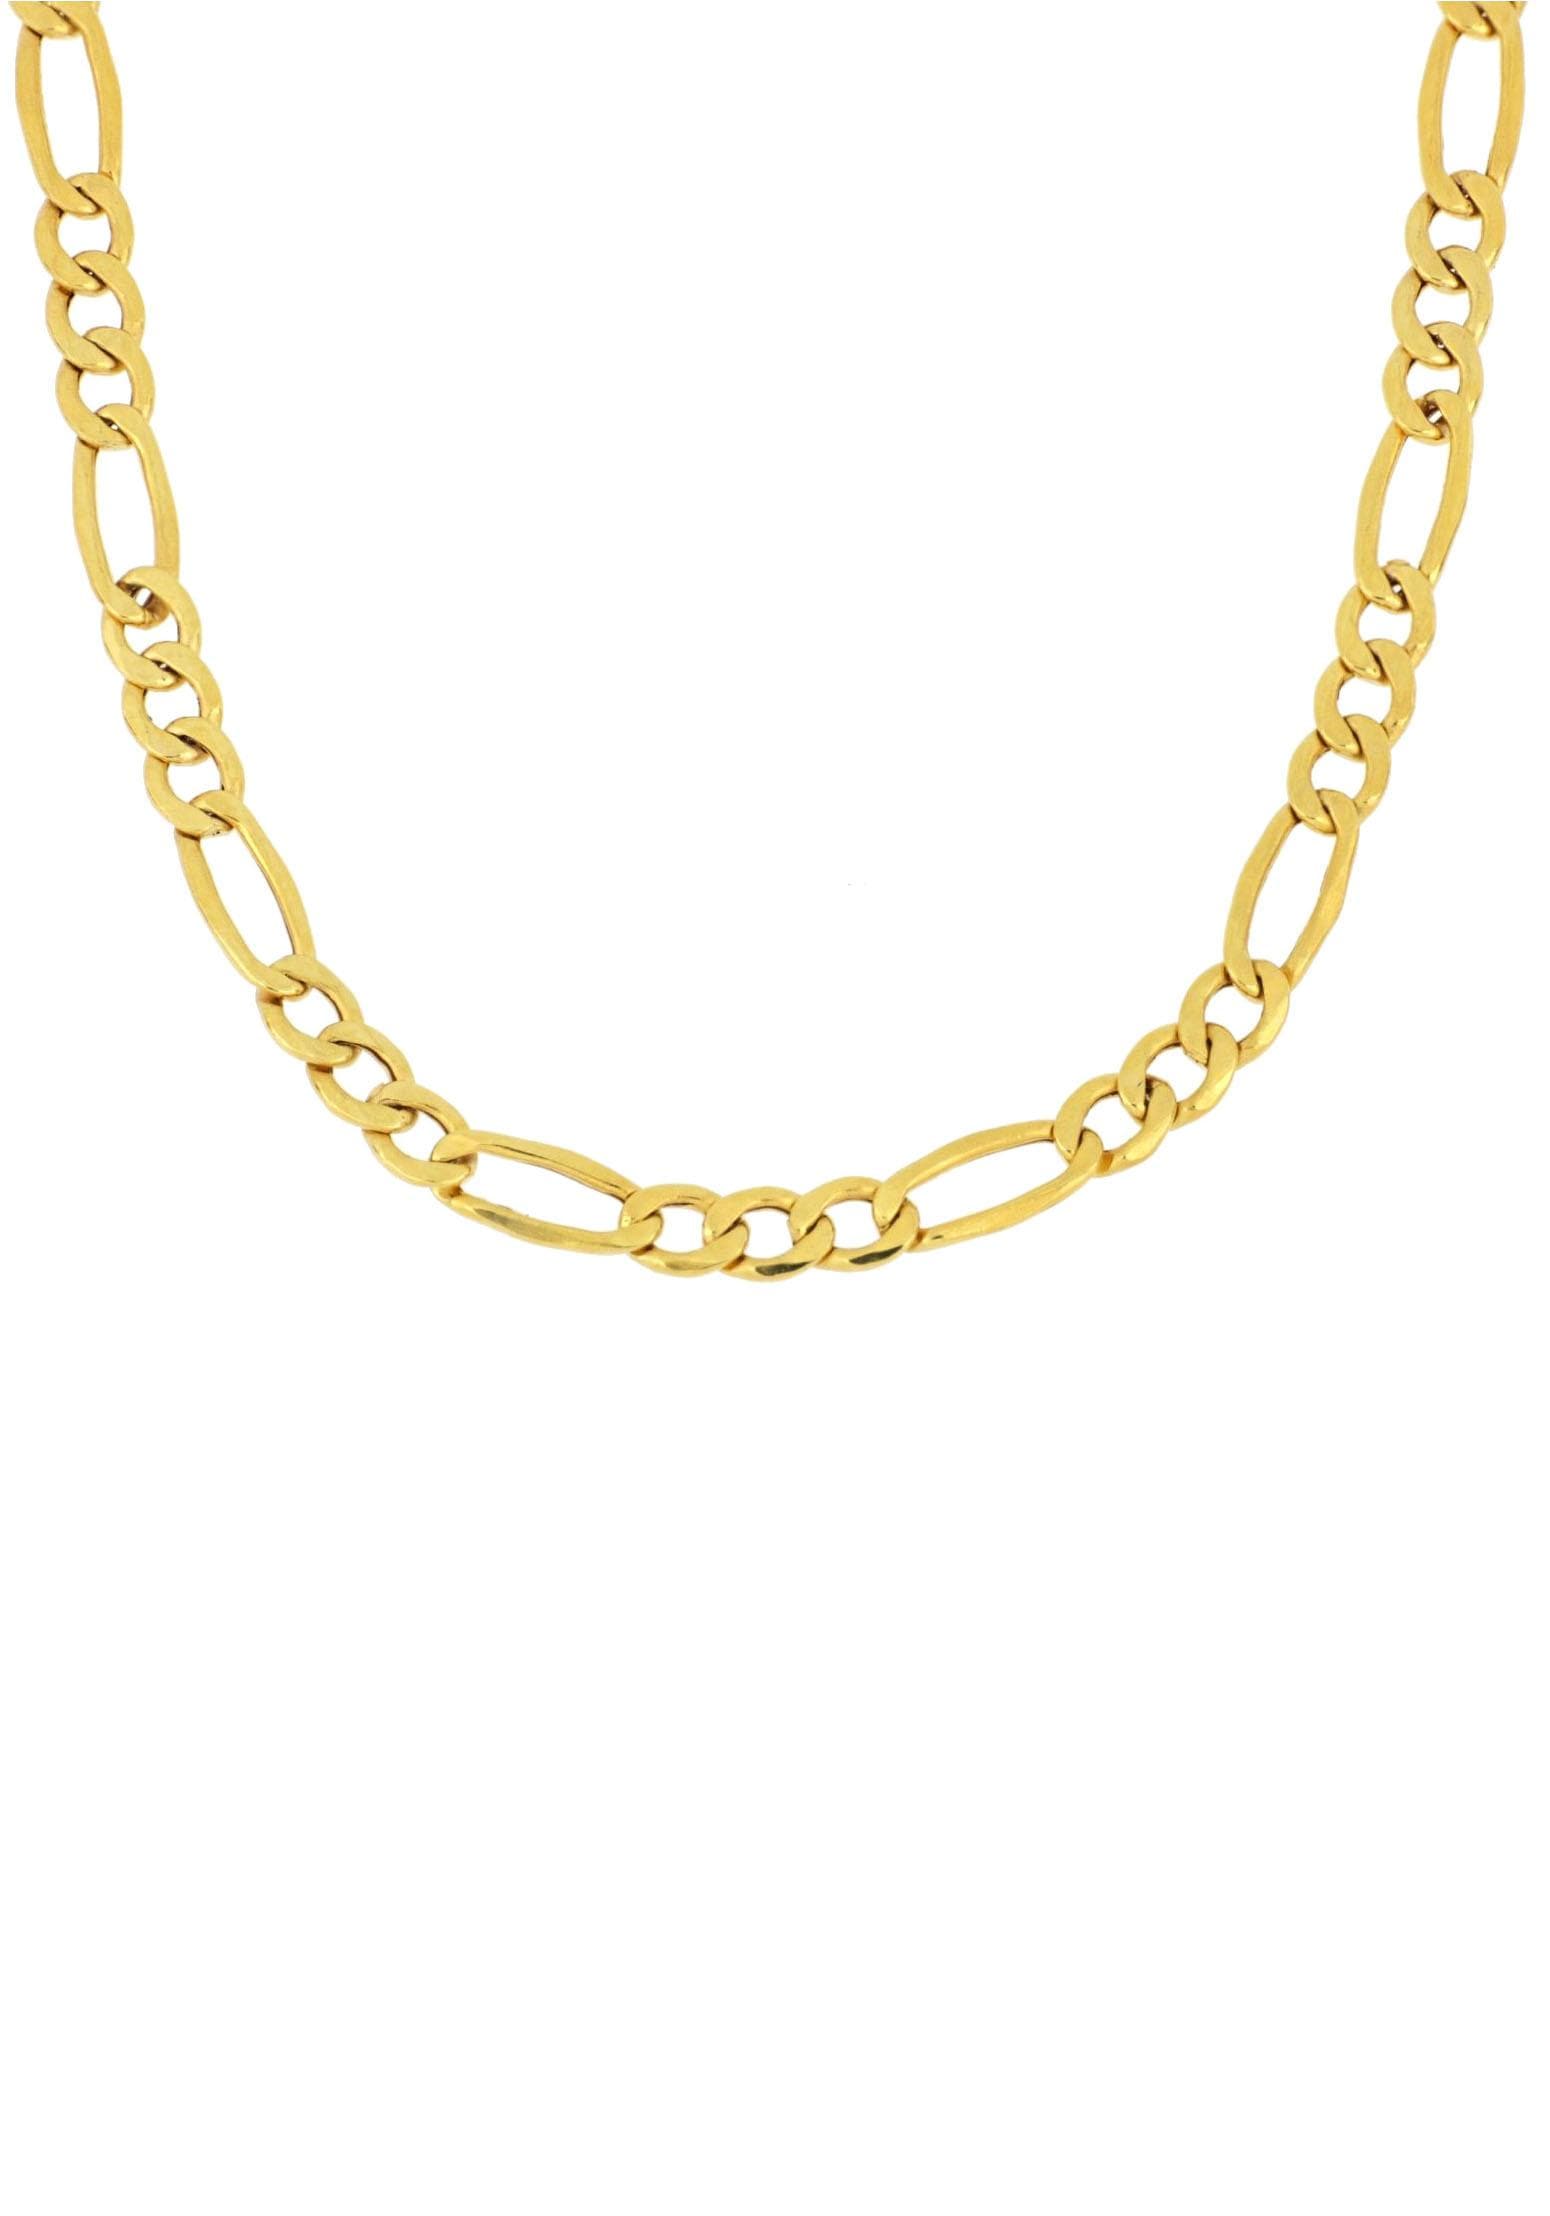 Firetti Goldkette »Figarokettengliederung, ca. 2,6 kaufen mm breit« bequem